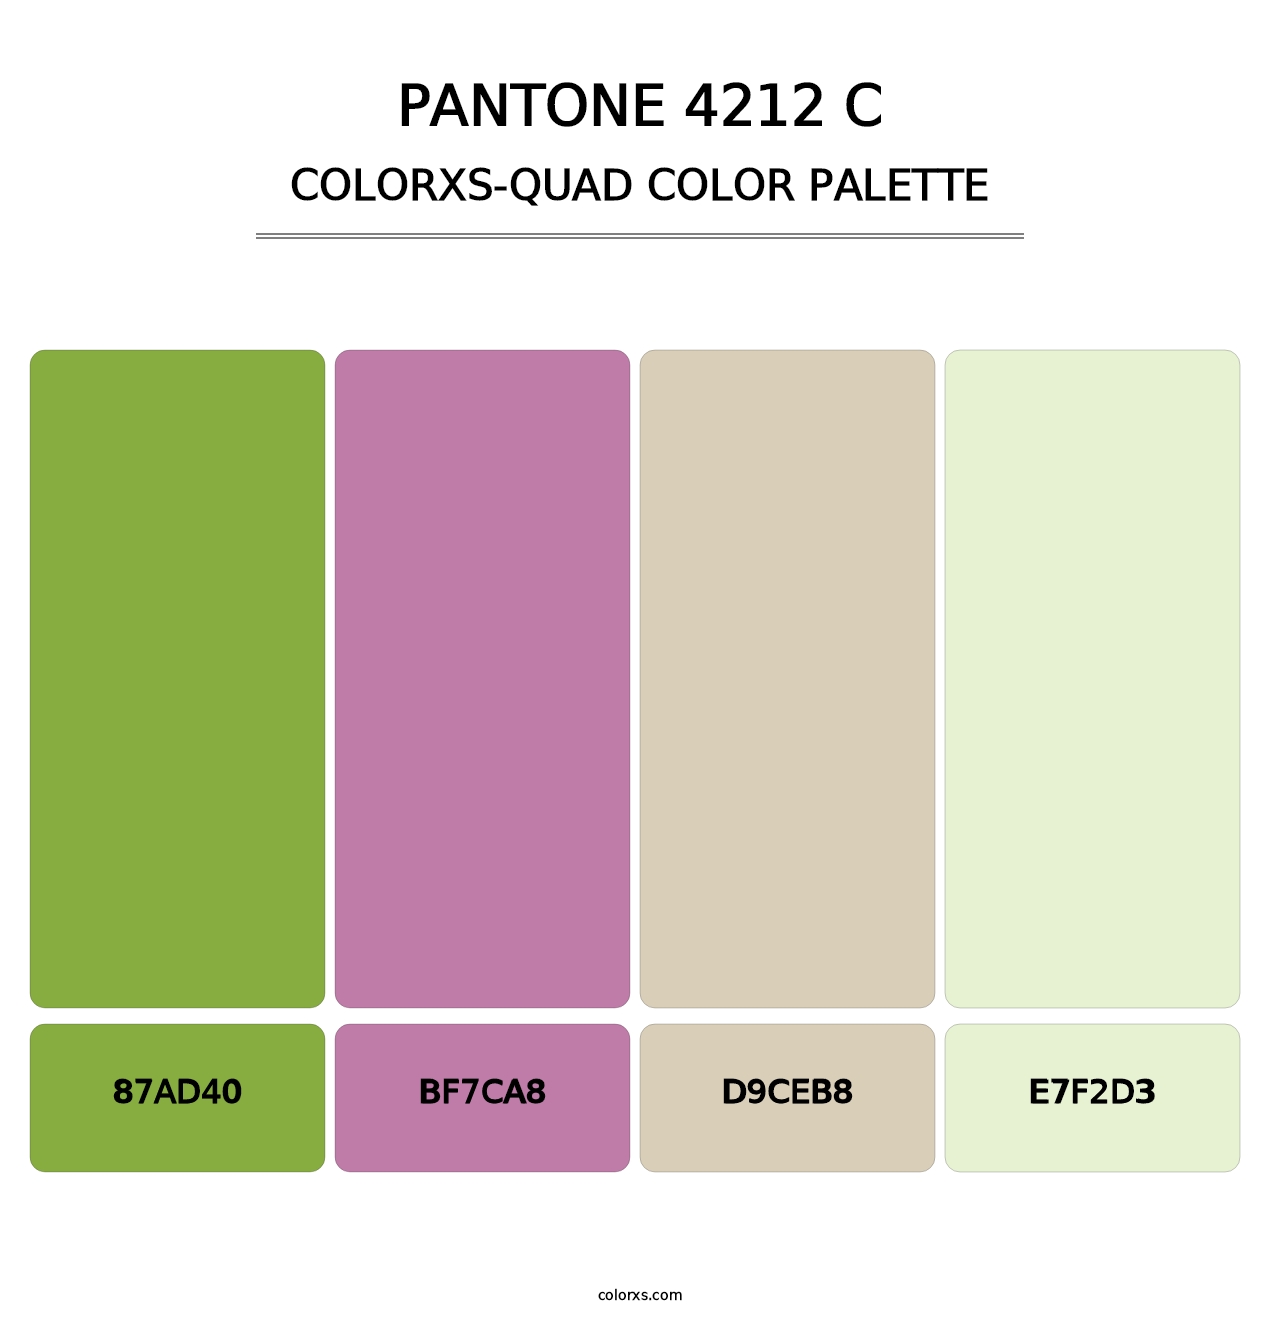 PANTONE 4212 C - Colorxs Quad Palette